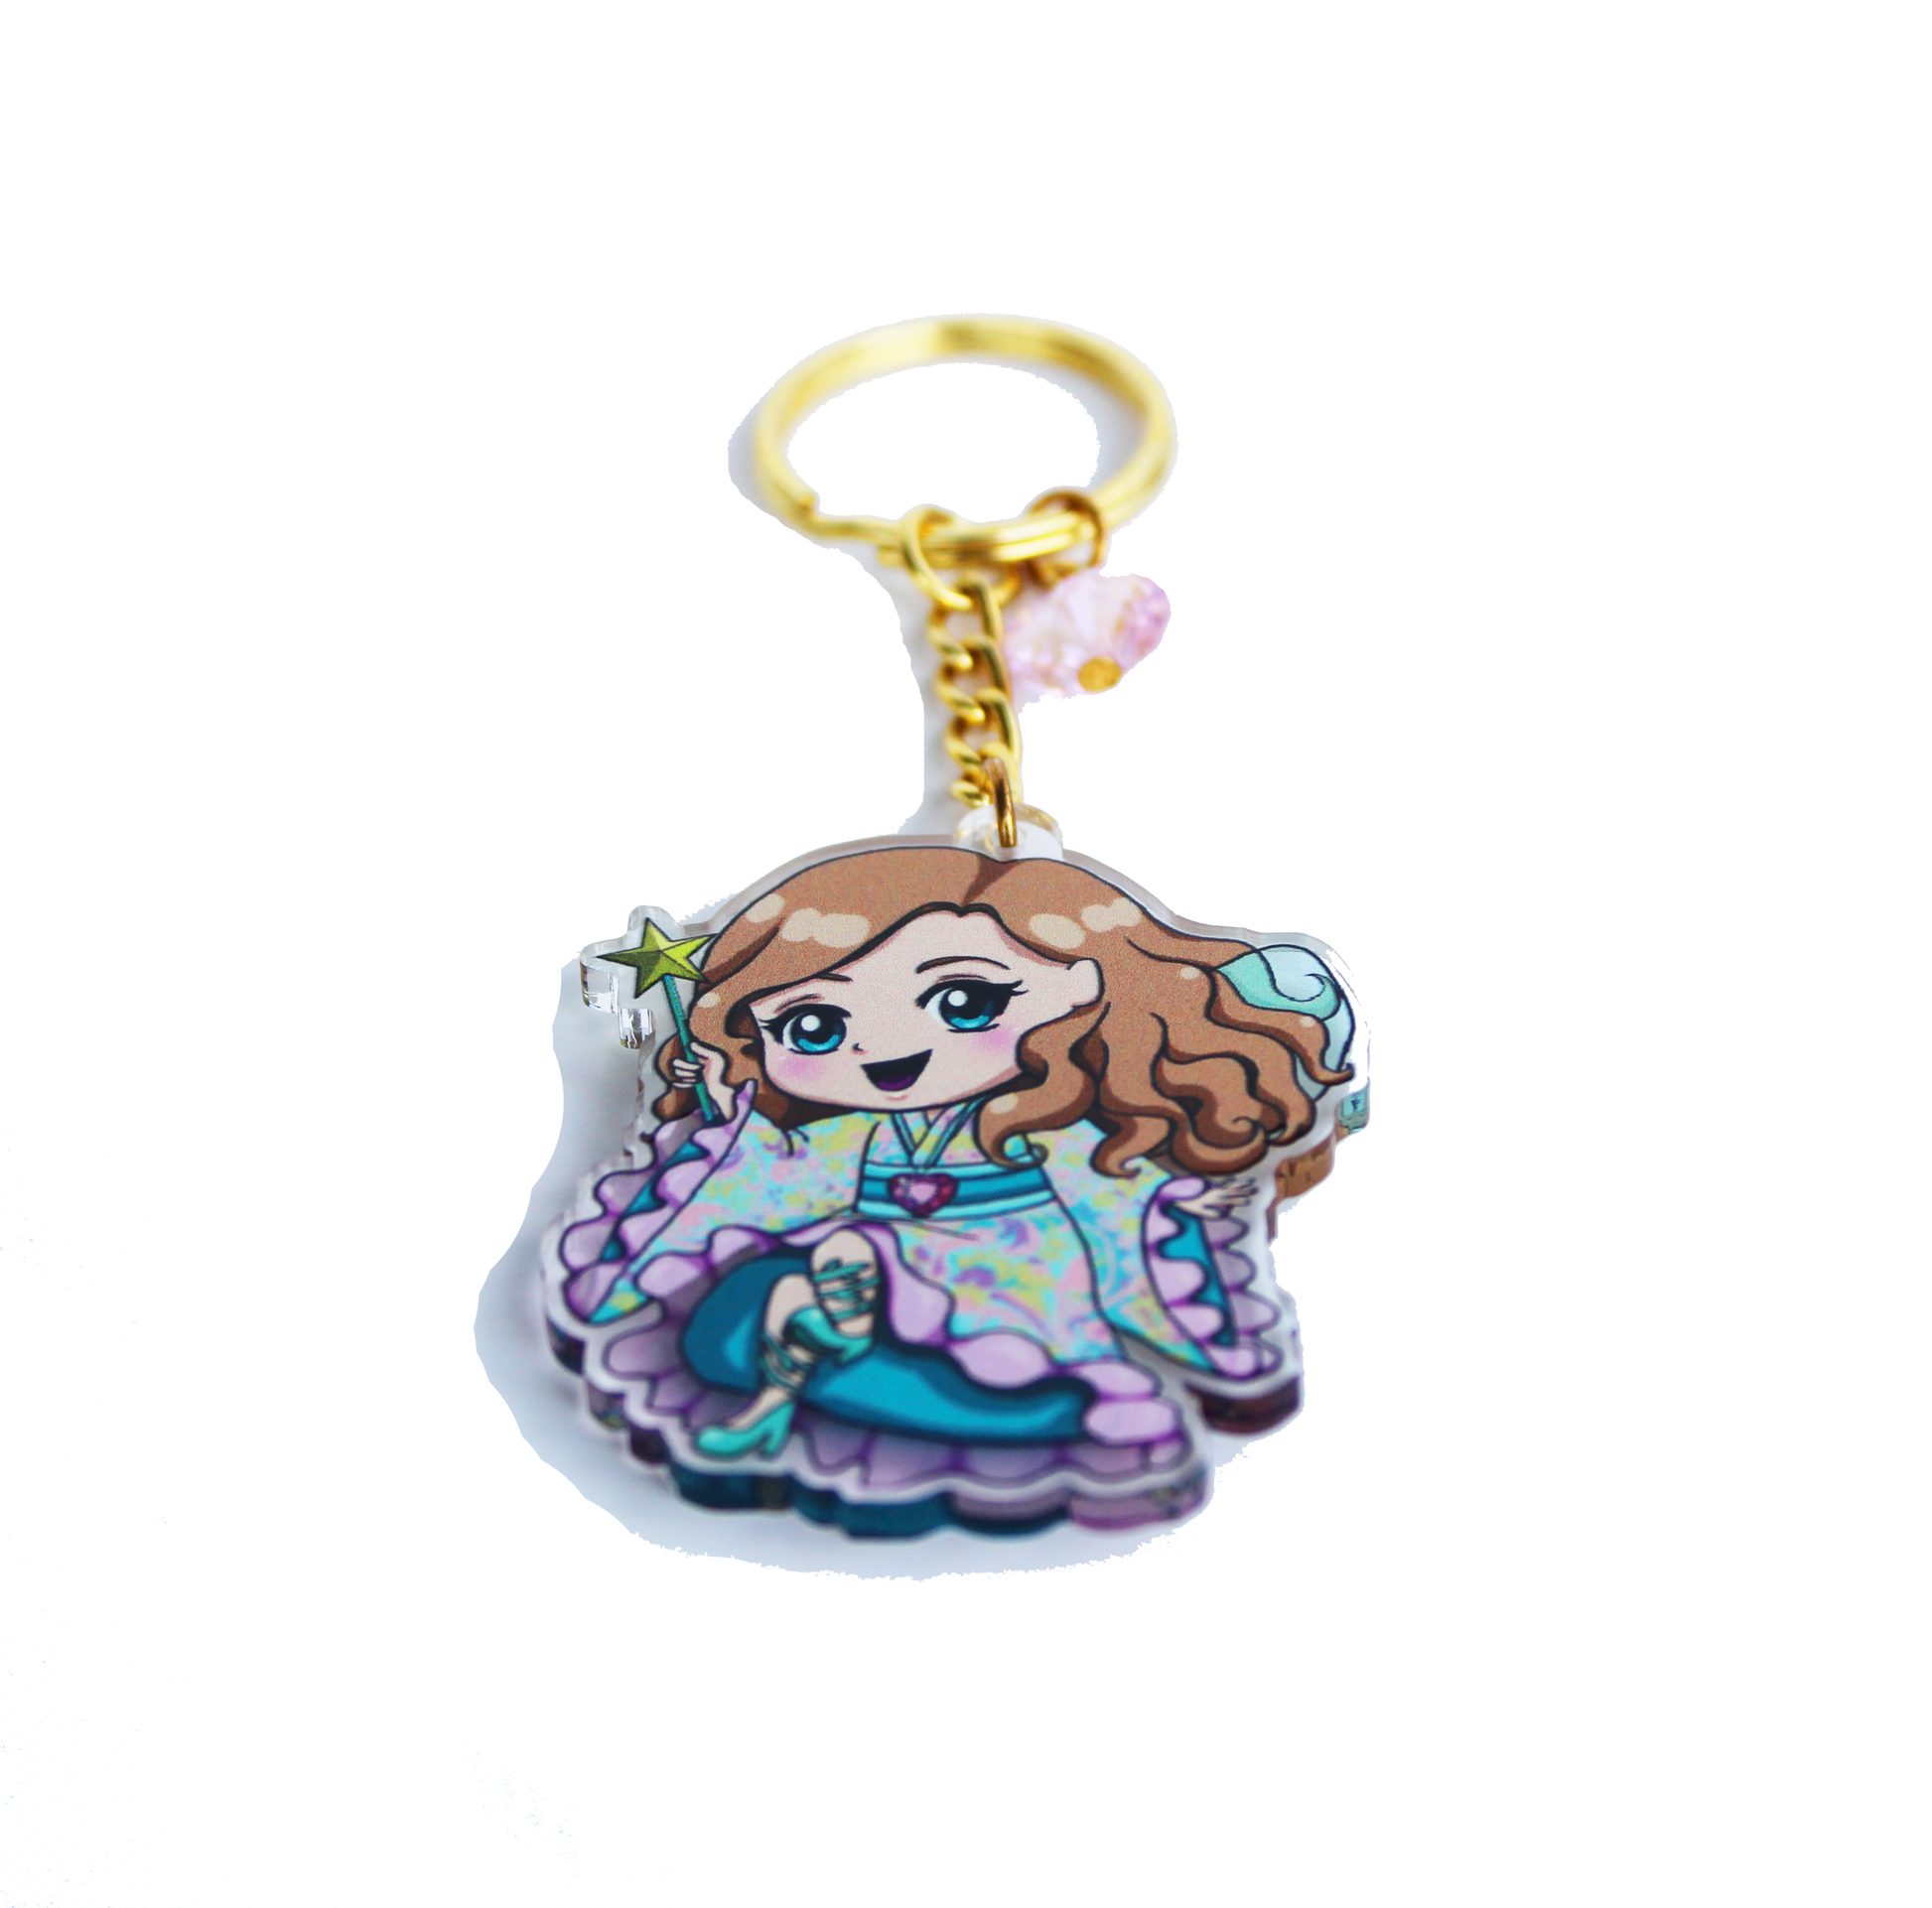 Doll Fairy Chibi Acrylic Charm Key Chain with Crystal Heart - The Doll Fairy